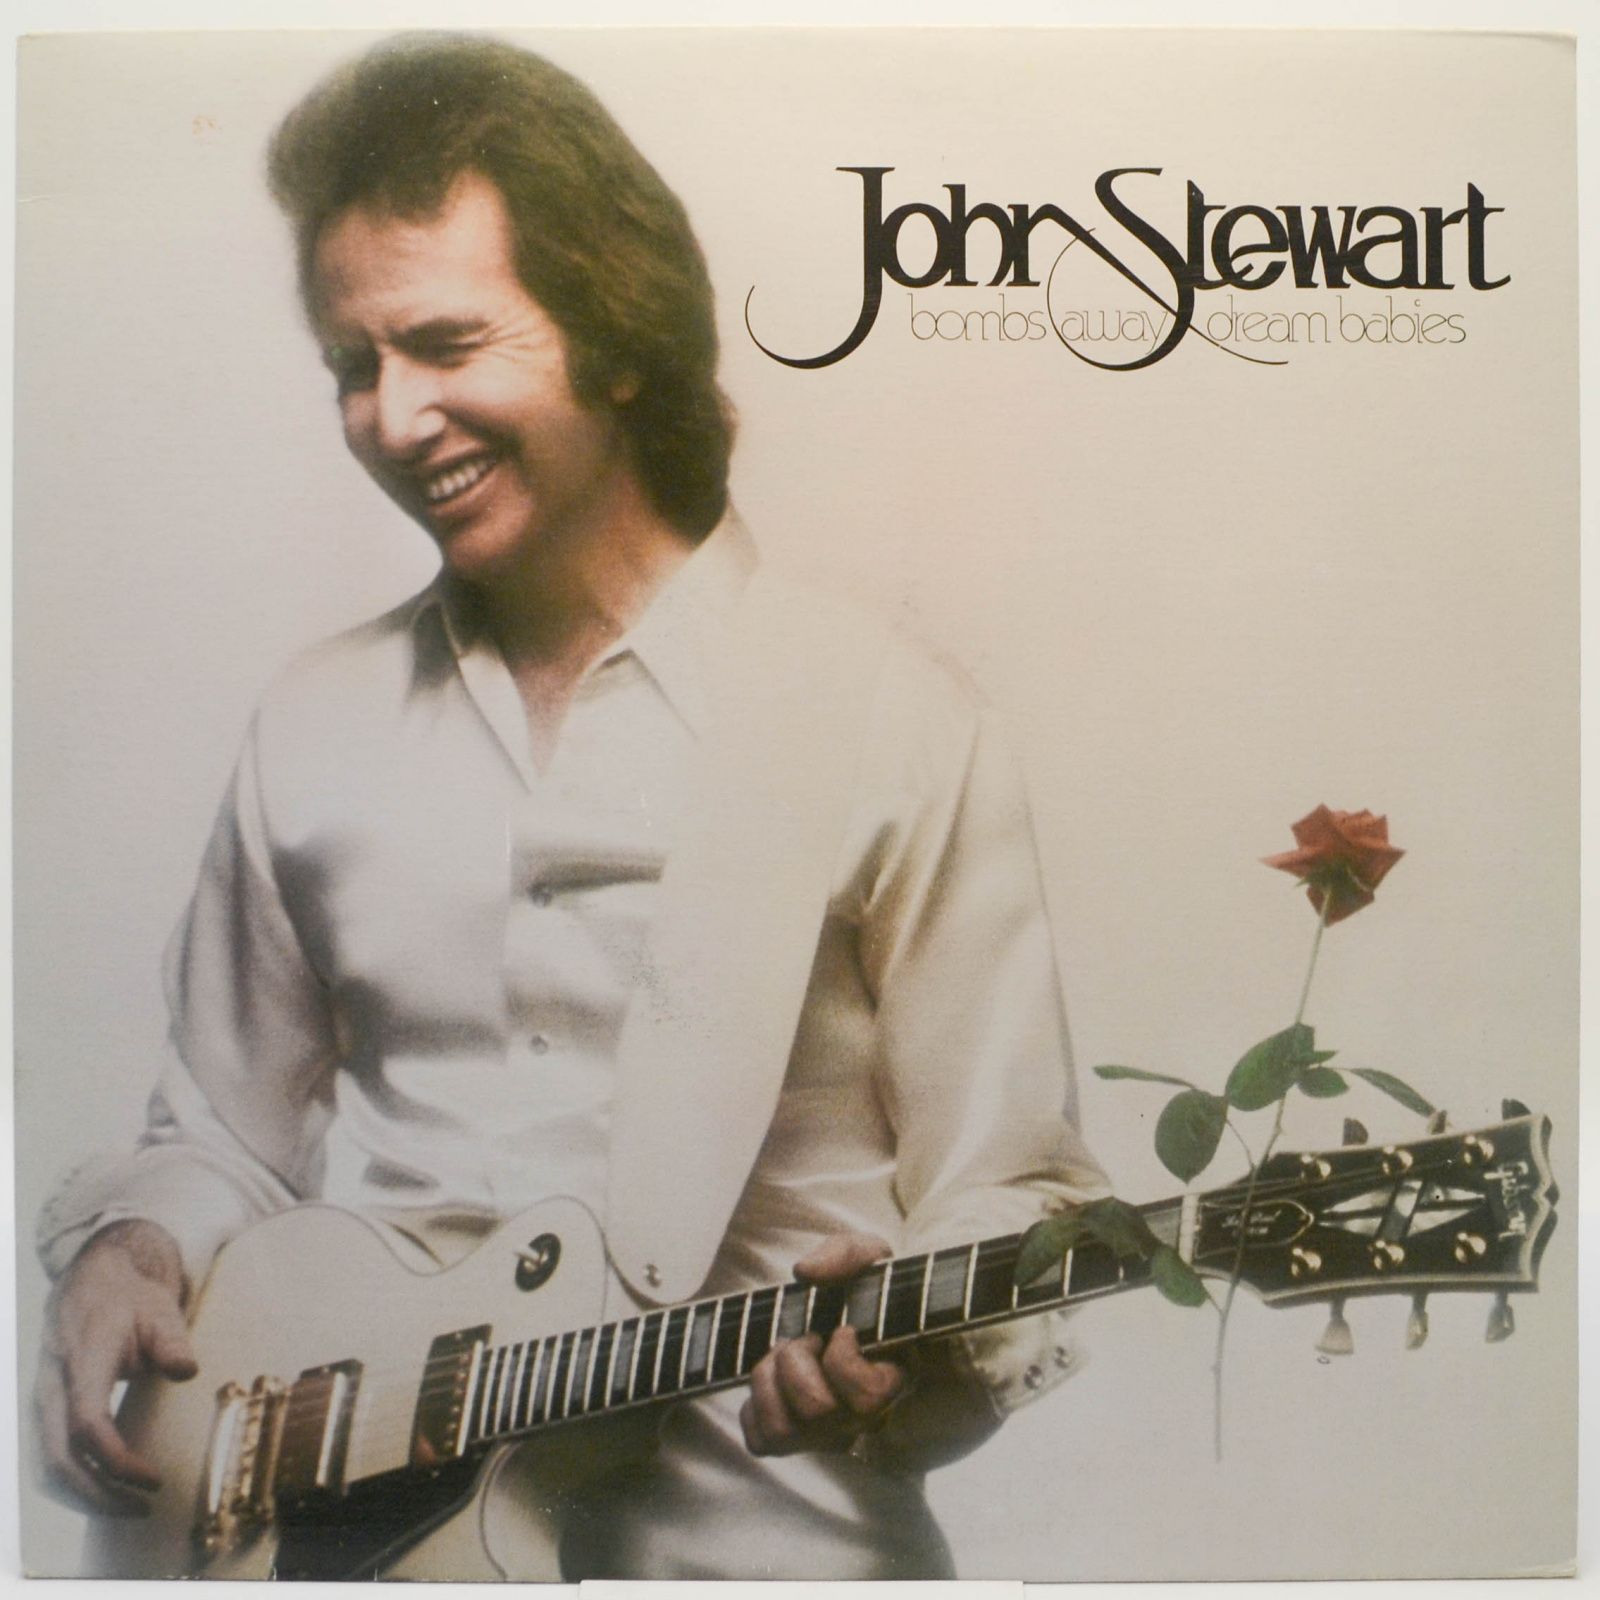 John Stewart — Bombs Away Dream Babies, 1979